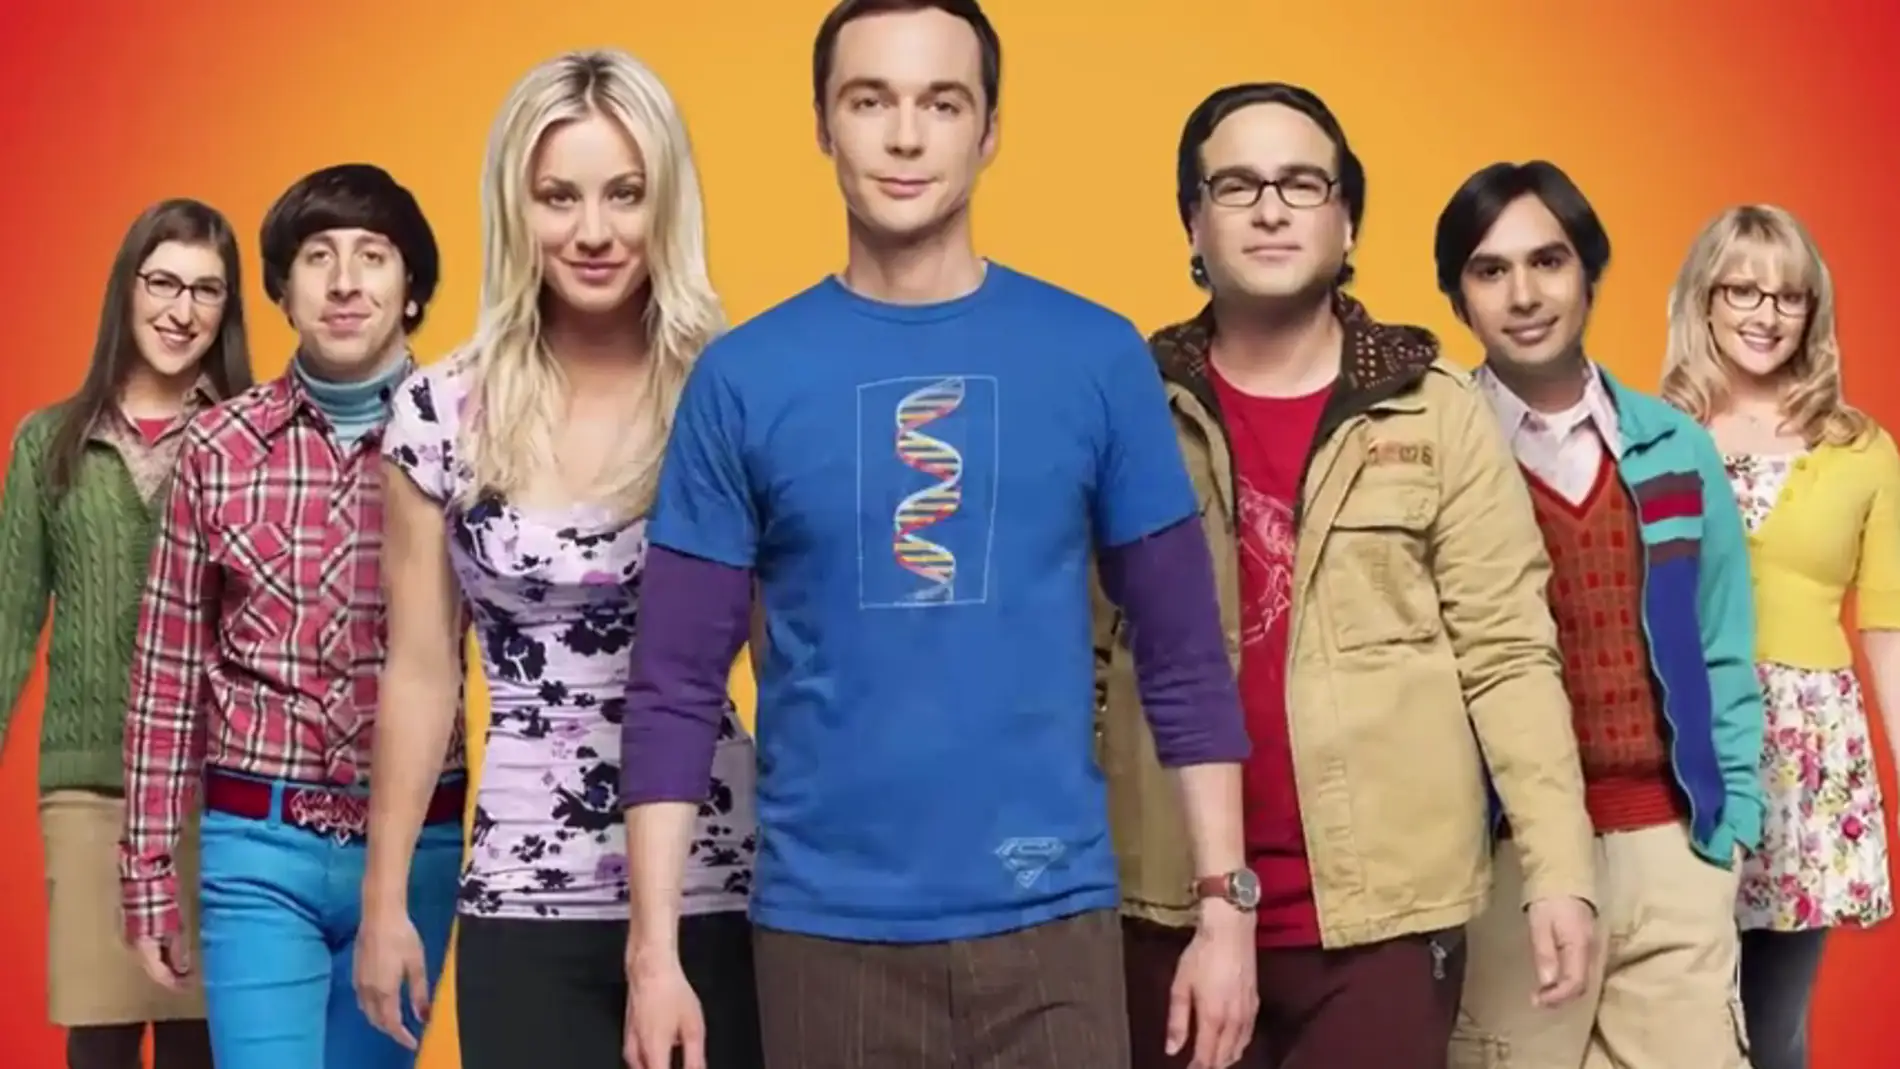 10 Años de 'The Big Bang Theory' contado en menos de 2 minutos